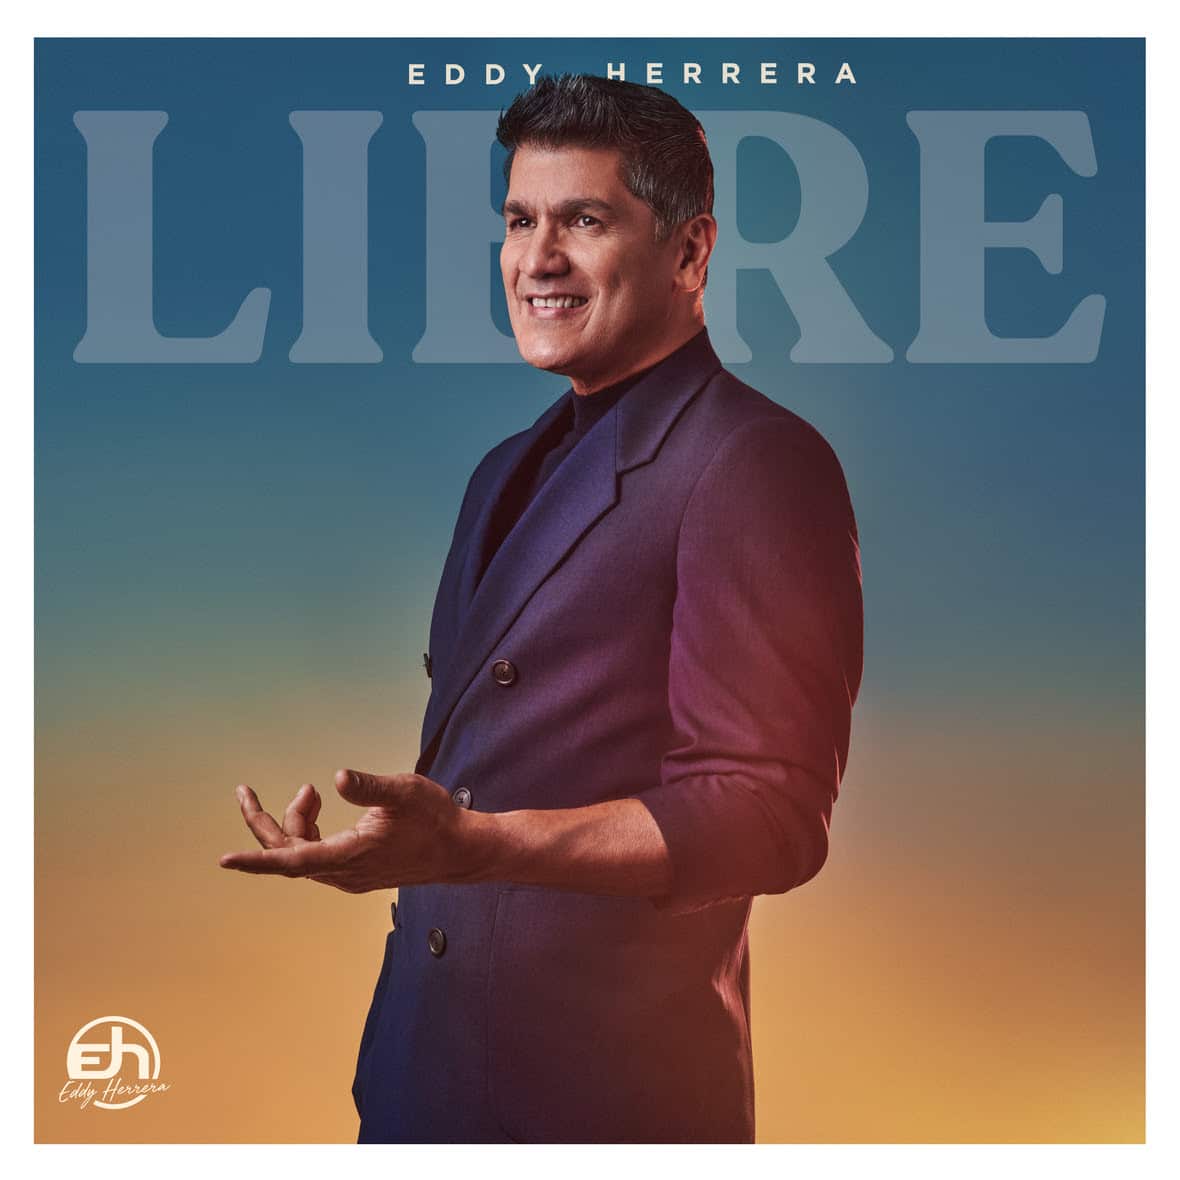 Eddy Herrera compone y estrena su nuevo álbum musical “Libre"